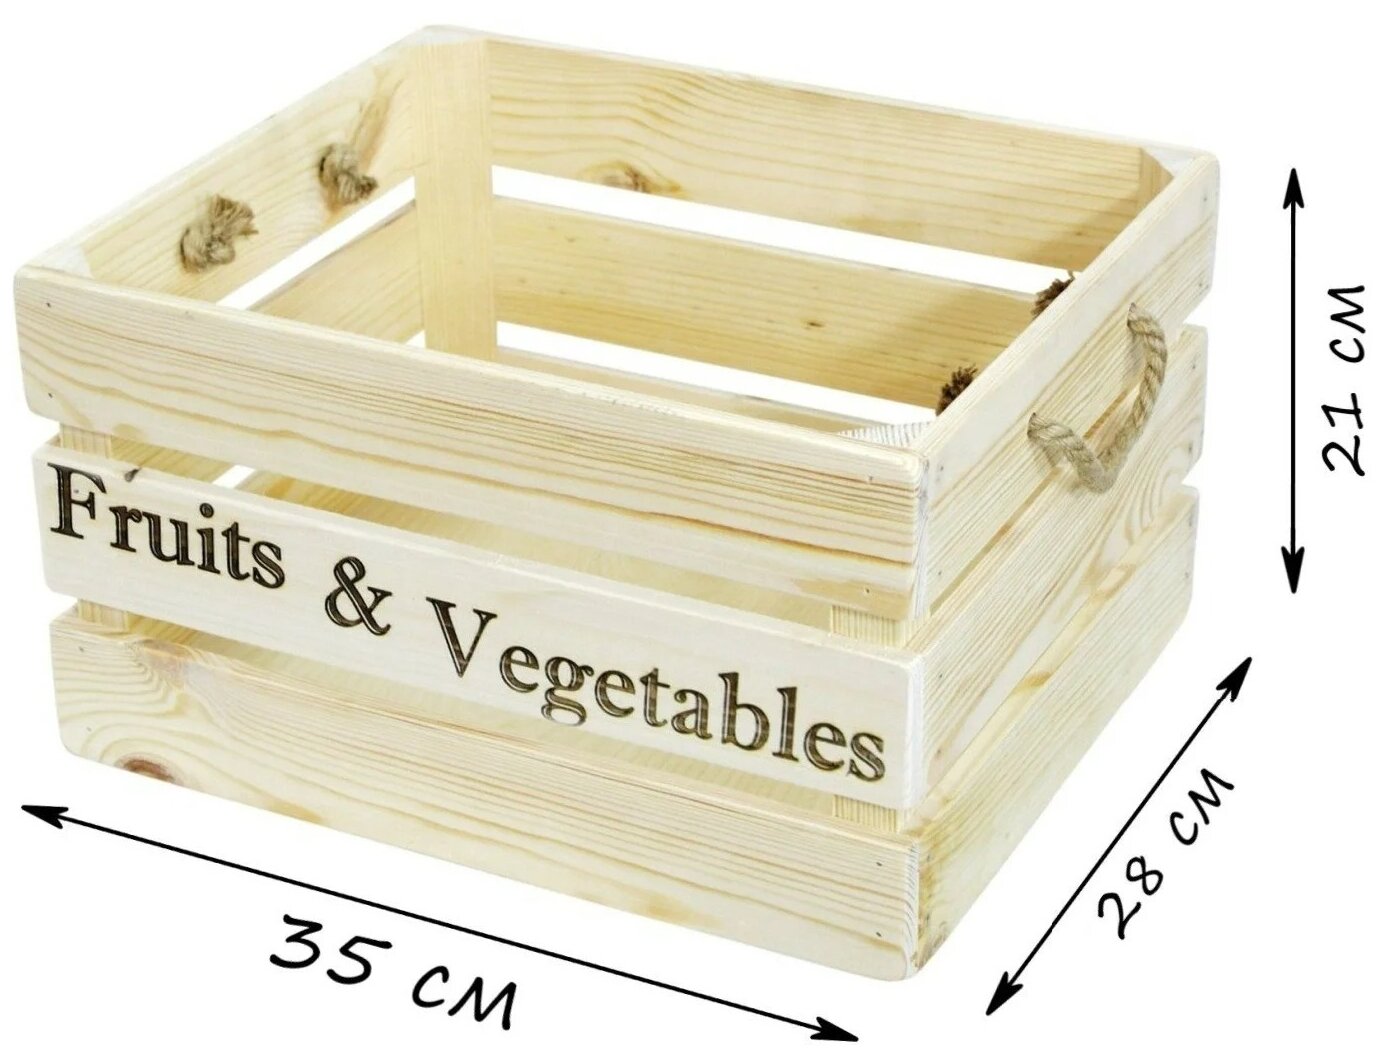 Ящик для овощей и фруктов, 40 × 30 × 30 см, деревянный